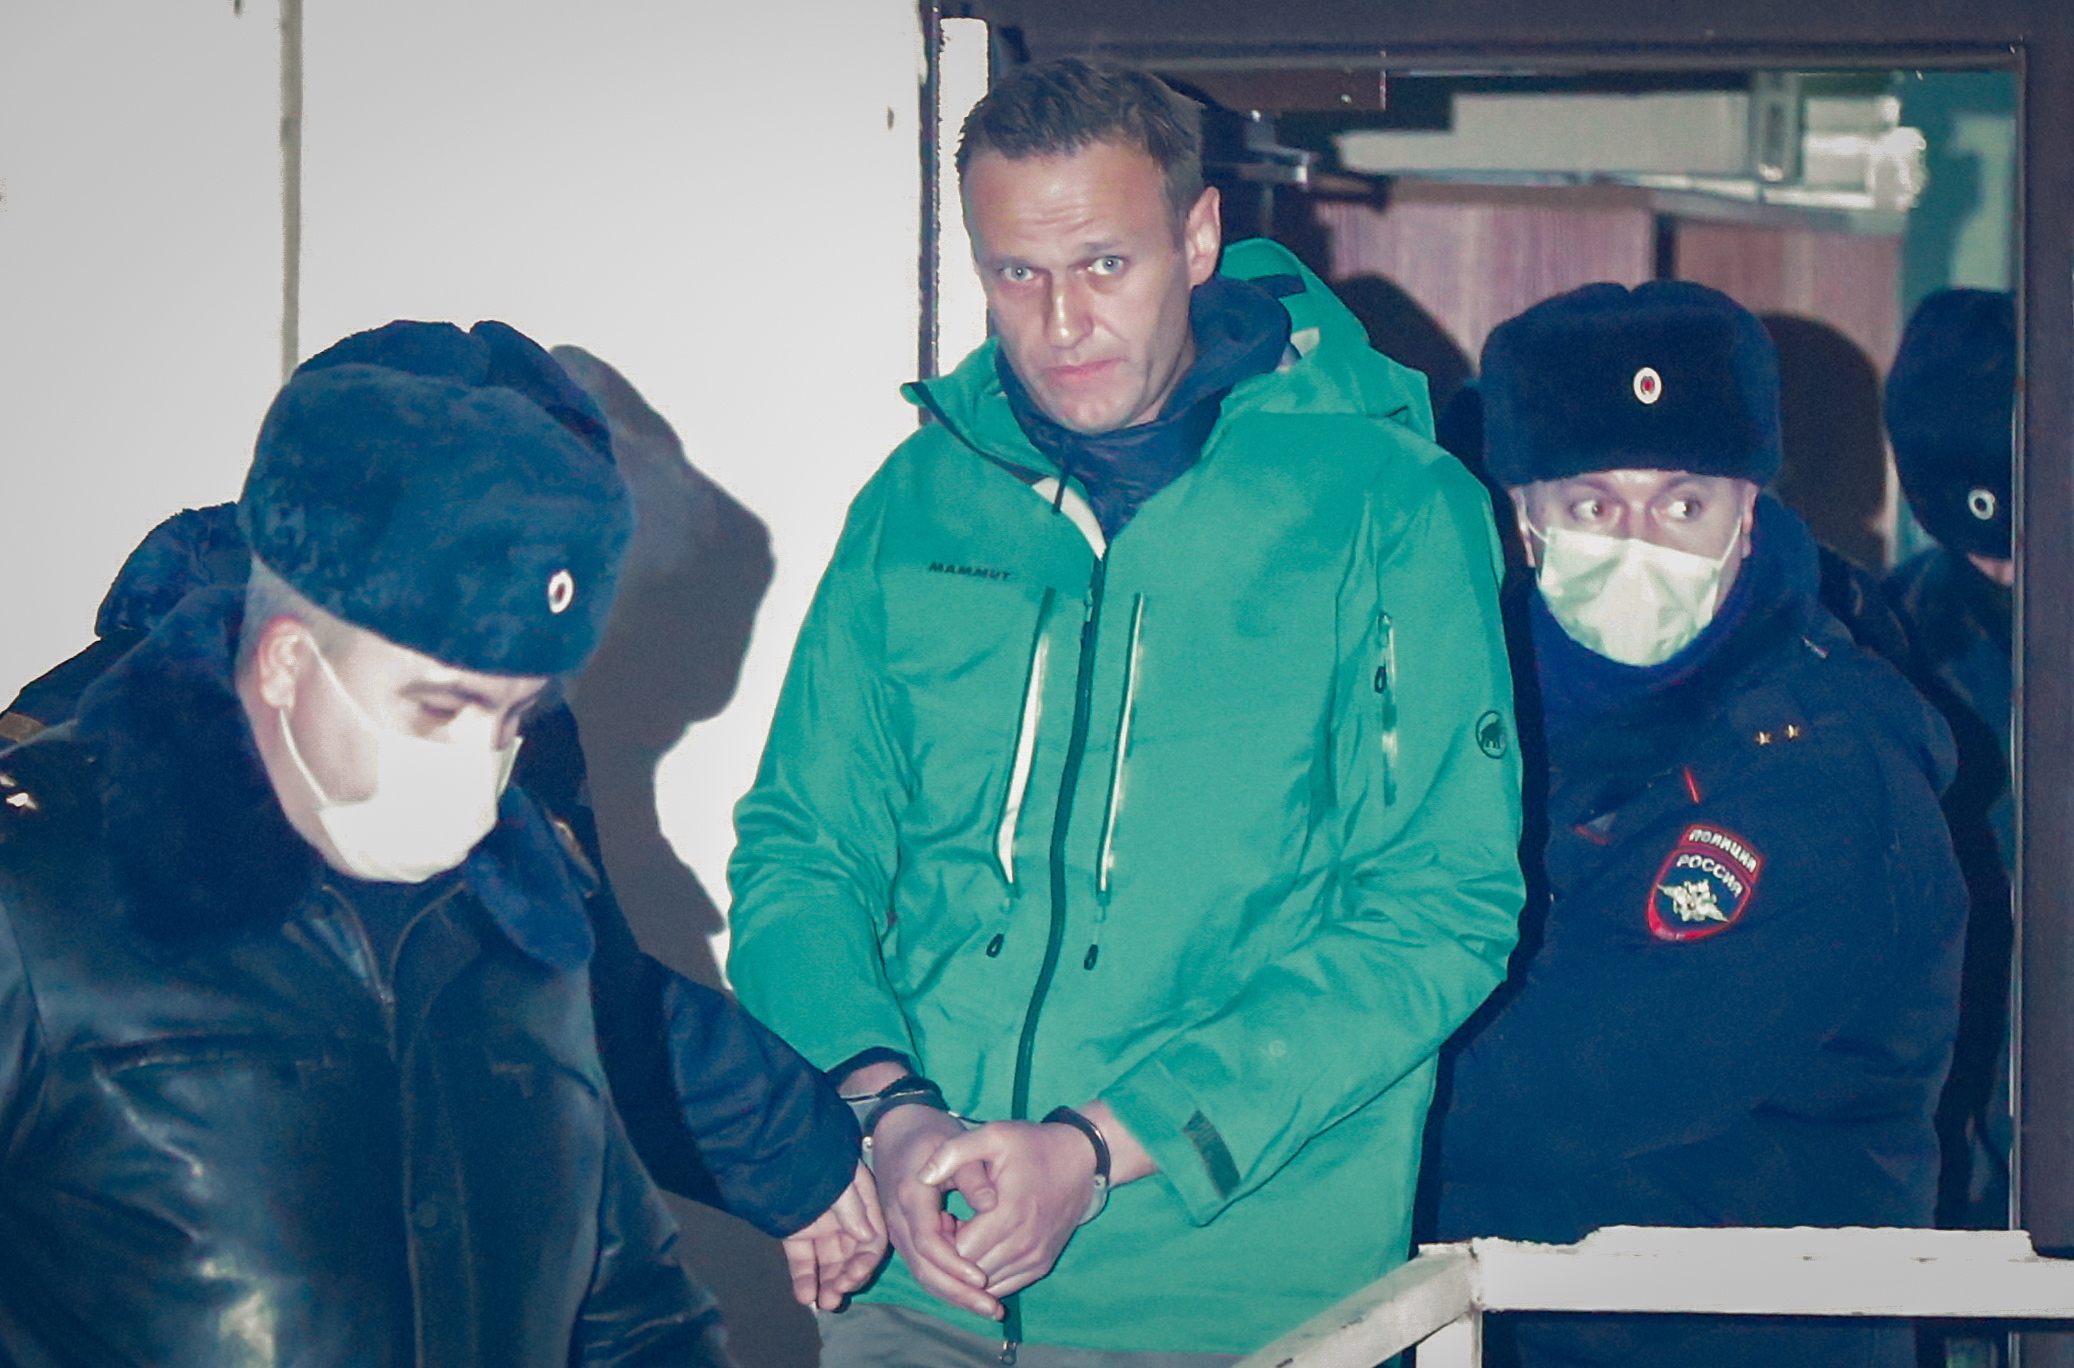 El opositor ruso Alexéi Navalni sale esposado de una comisaría en las afueras de Moscú, el pasado 18 de enero. EFE/ Sergei Ilnitsky/Archivo
